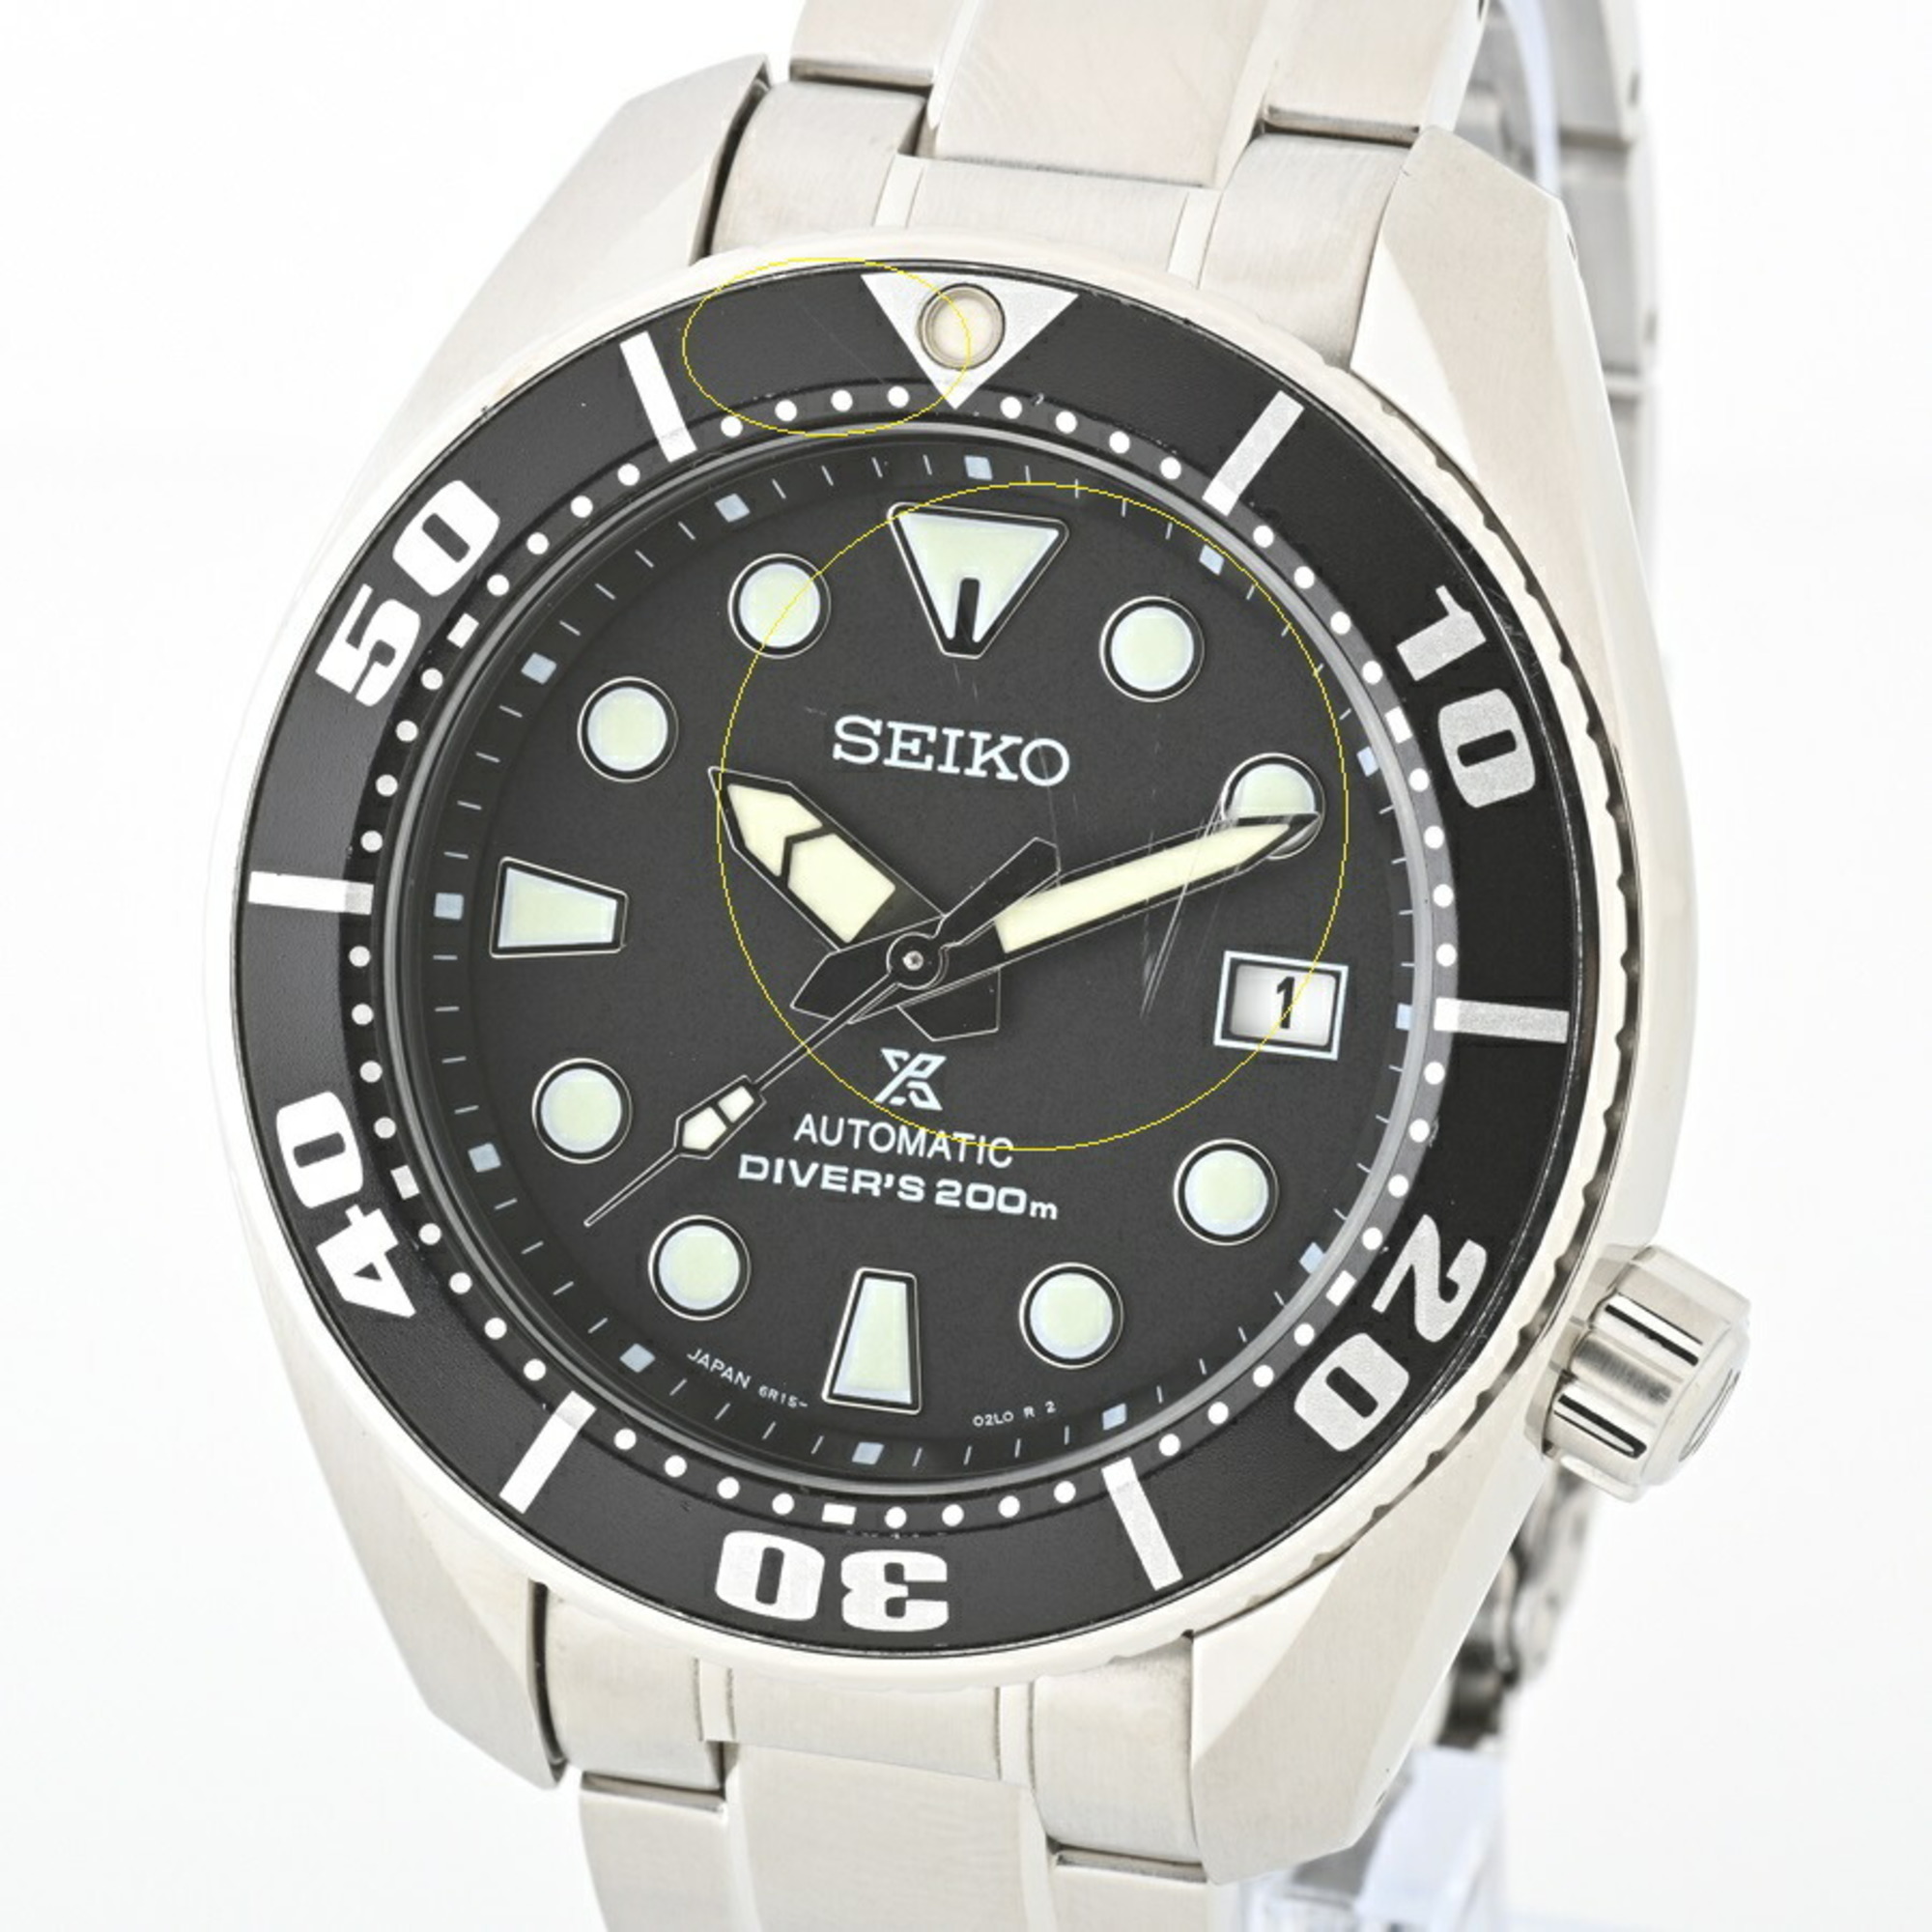 Seiko Prospex SBDC033 Automatic Watch E-153859